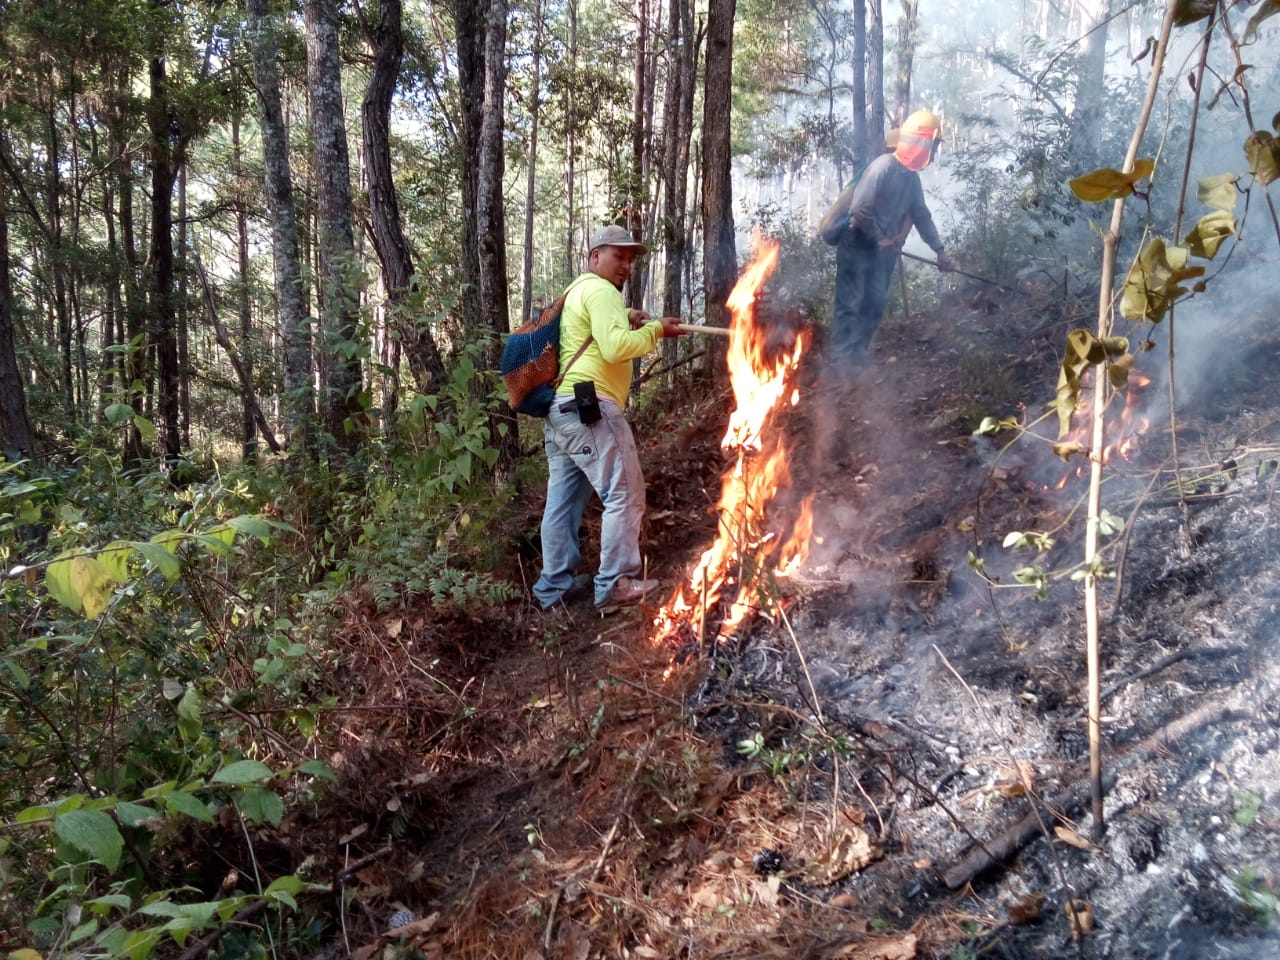 La temporada de incendios forestales aún se encuentra activa, informó Conred. (Foto Prensa Libre: Cortesía)